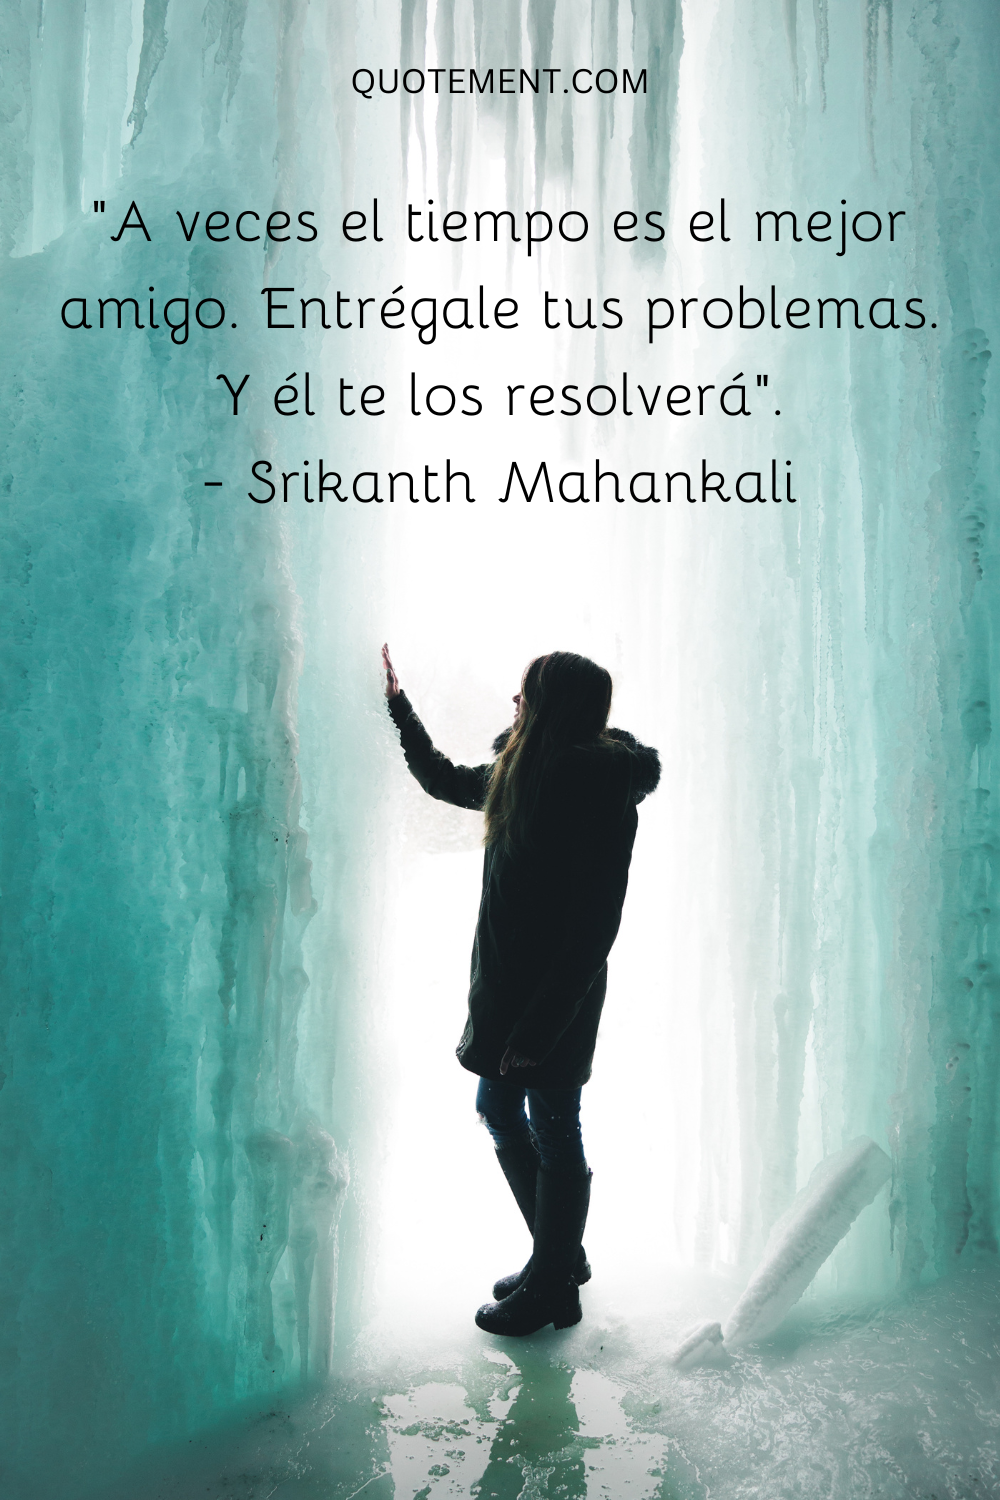 "A veces el tiempo es el mejor amigo. Entrégale tus problemas. Y él te los resolverá". - Srikanth Mahankali